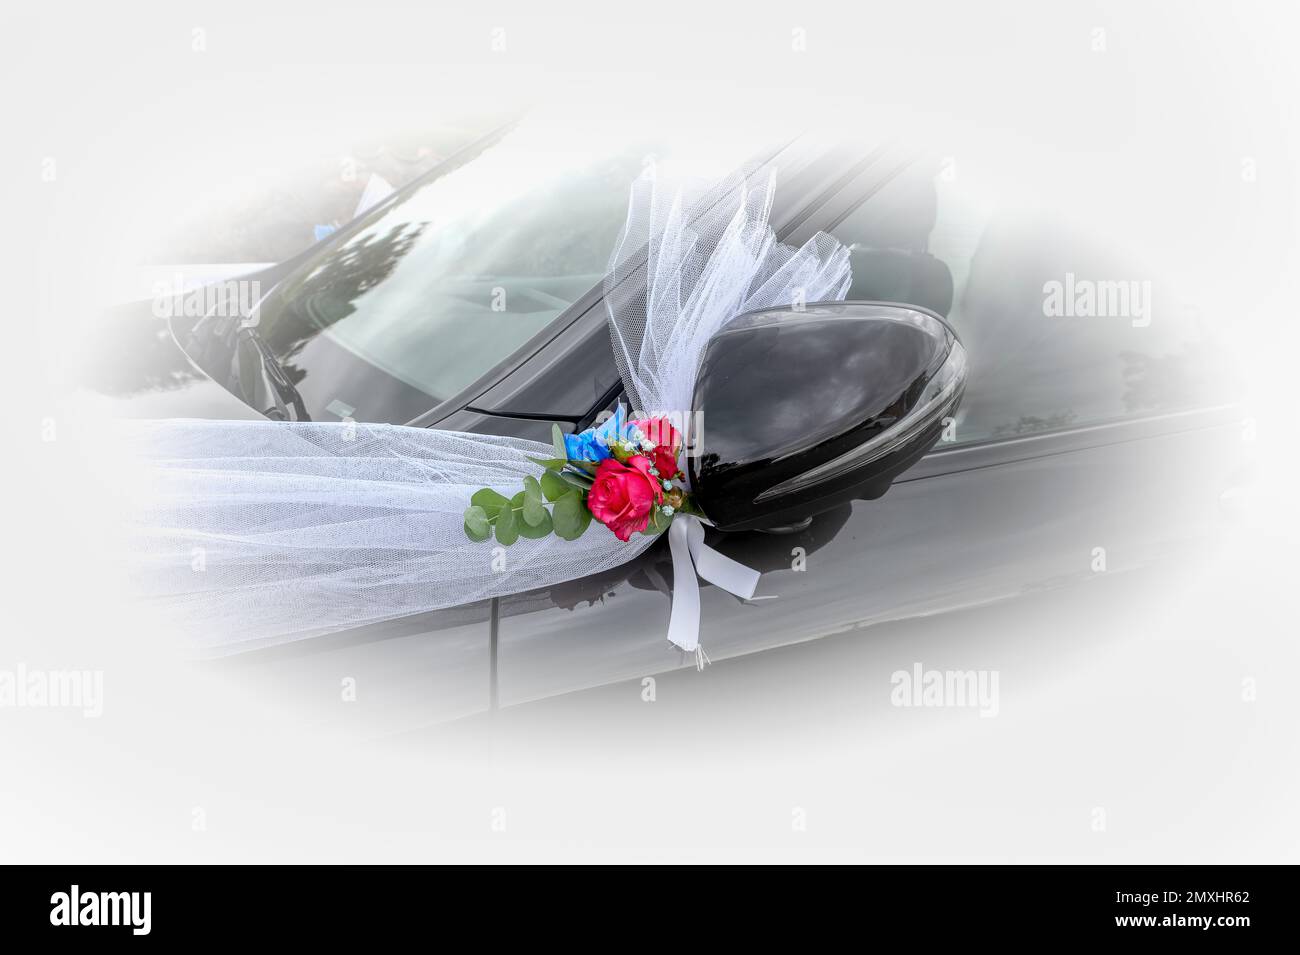 Dekoriertes schwarzes Auto mit weißen Schleifen und roten Rosen für ein frisch verheiratetes Paar, Dänemark, 3. september 2022 Stockfoto